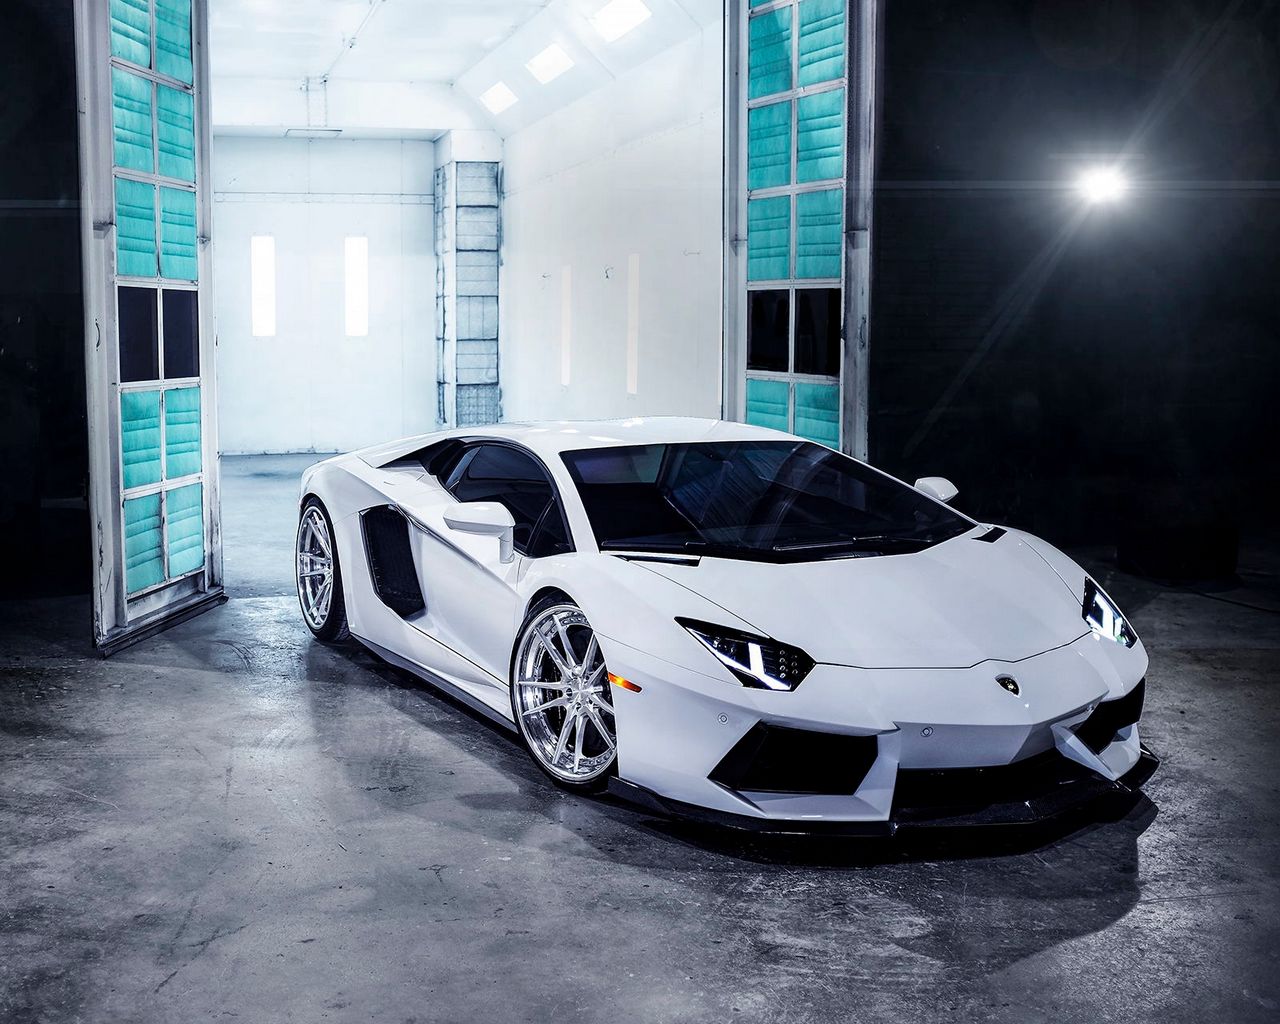 Sở hữu bộ sưu tập hình nền Lamborghini đủ màu sắc sẽ đem lại cảm giác phiêu lưu vô cùng cho các fan hâm mộ của siêu xe danh tiếng này. Hãy cùng chiêm ngưỡng những thiết kế nổi tiếng vô cùng đẳng cấp và đầy lôi cuốn với Lamborghini wallpaper.